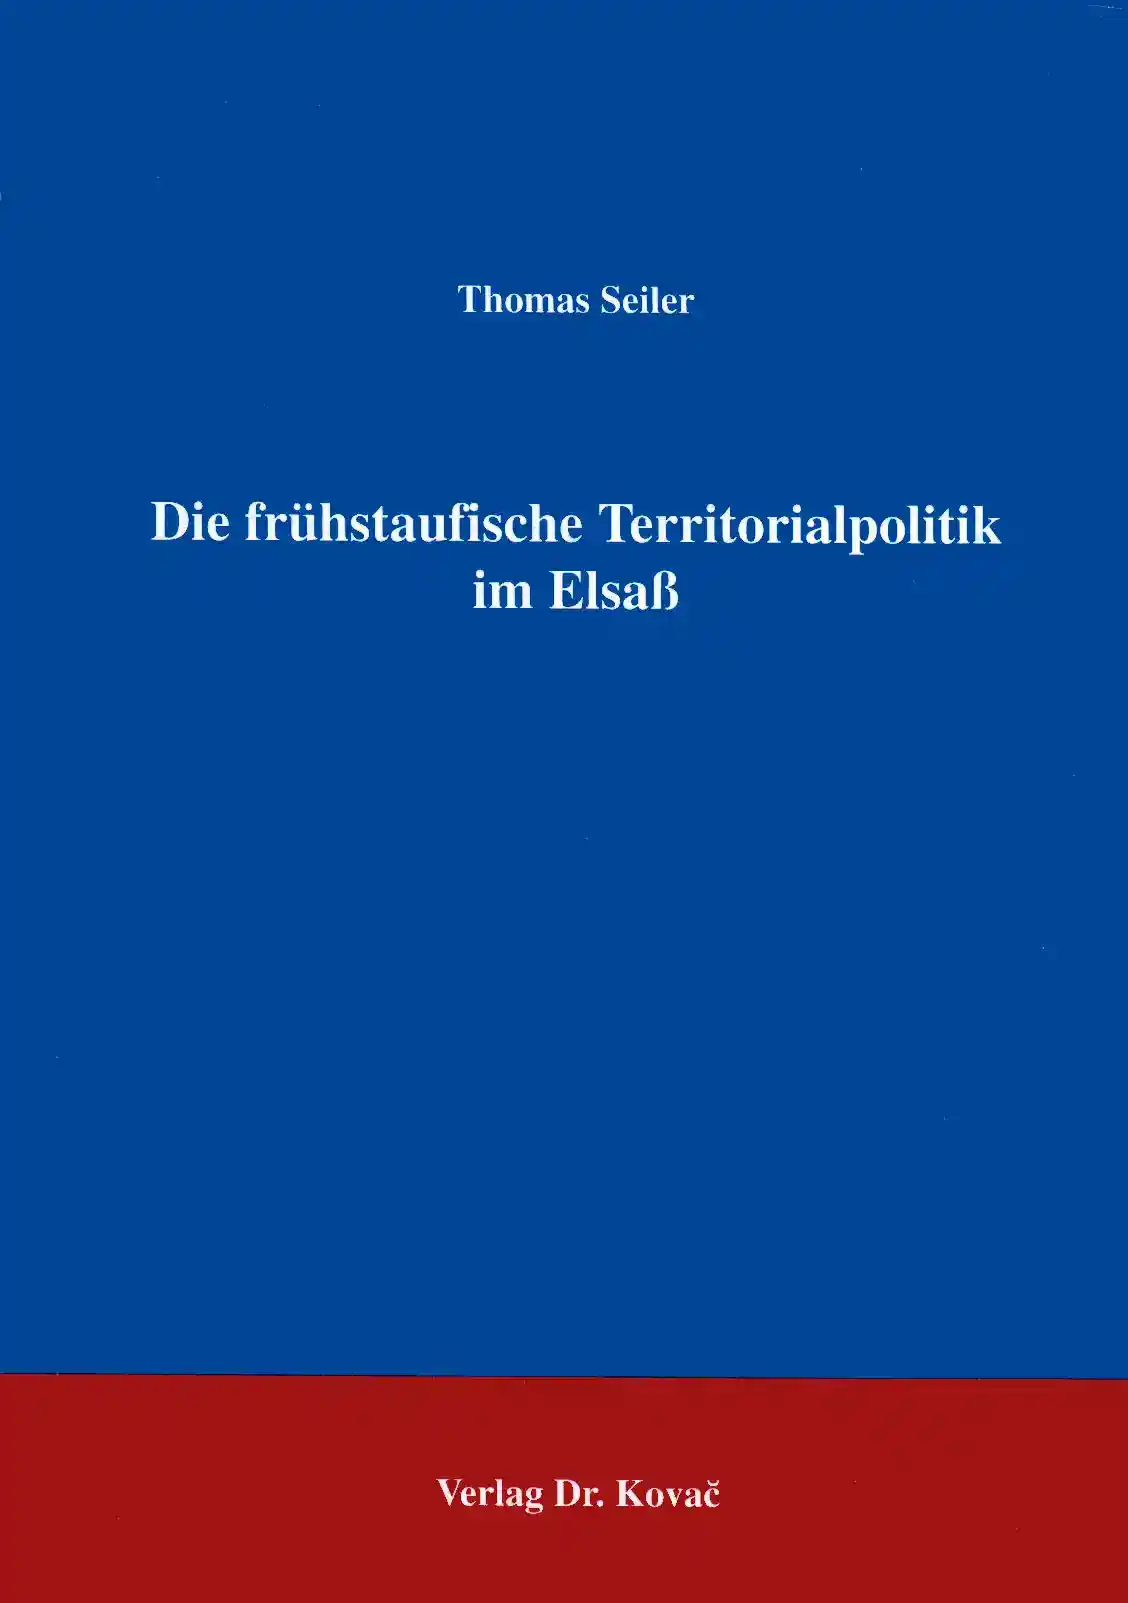 : Die frühstaufische Territorialpolitik im Elsaß